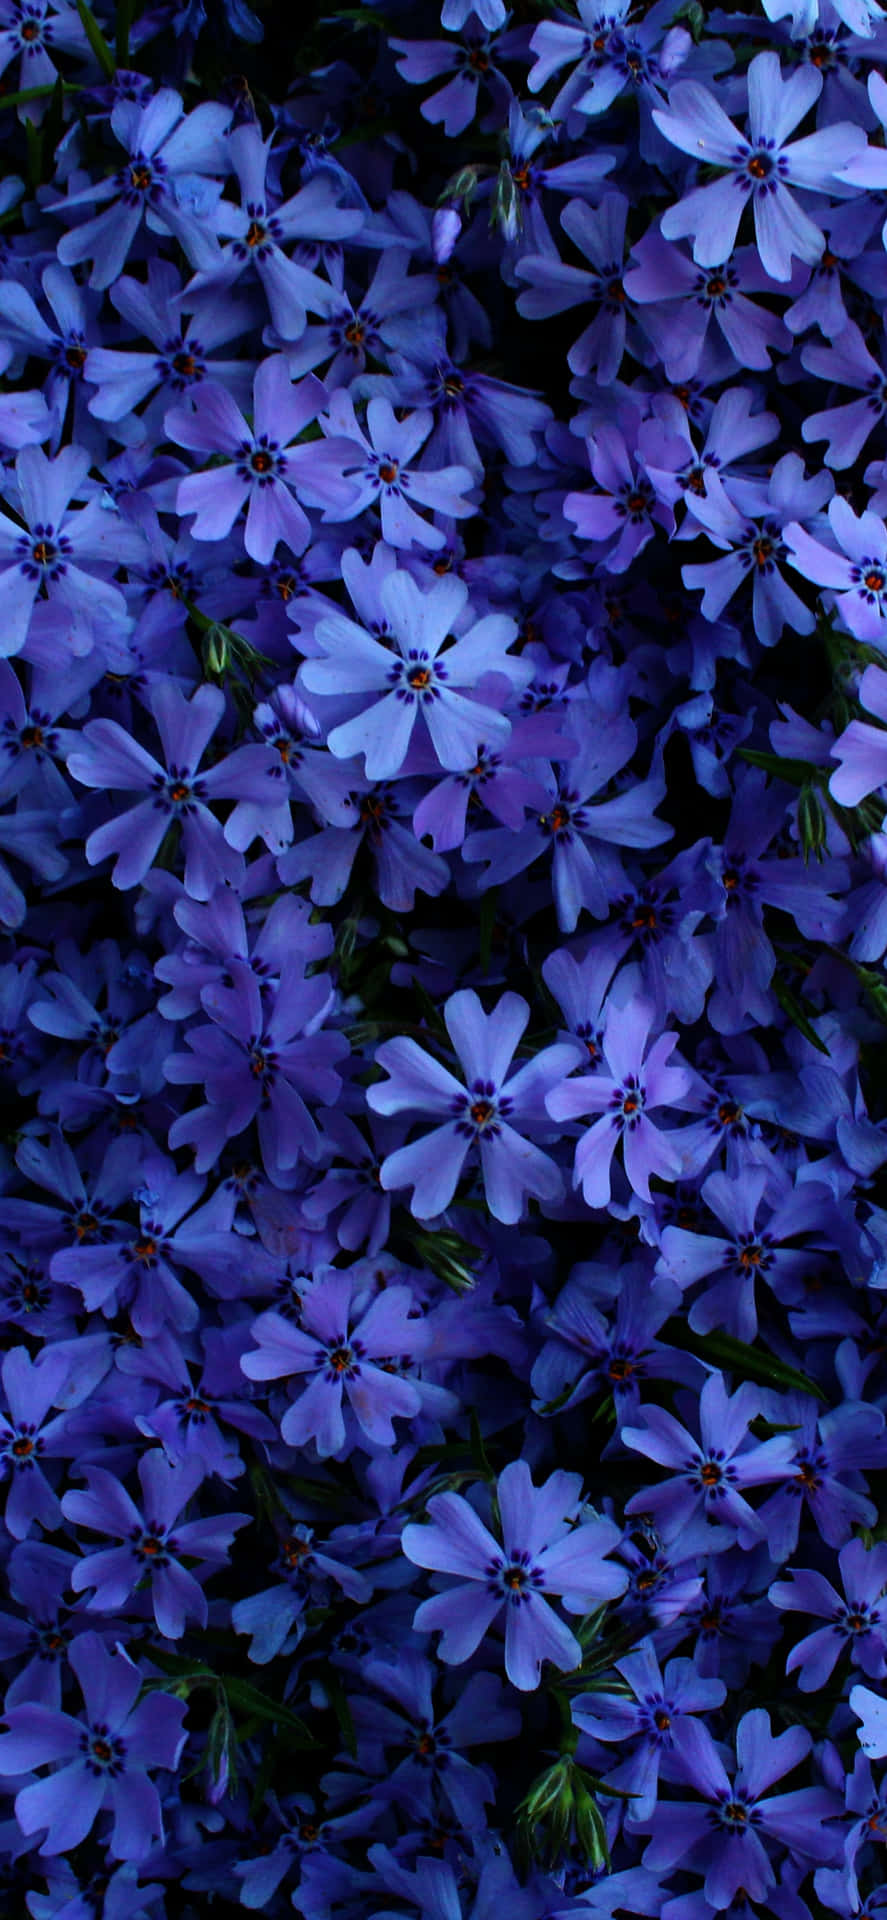 En levende, smuk blå blomst i fuldt flor.